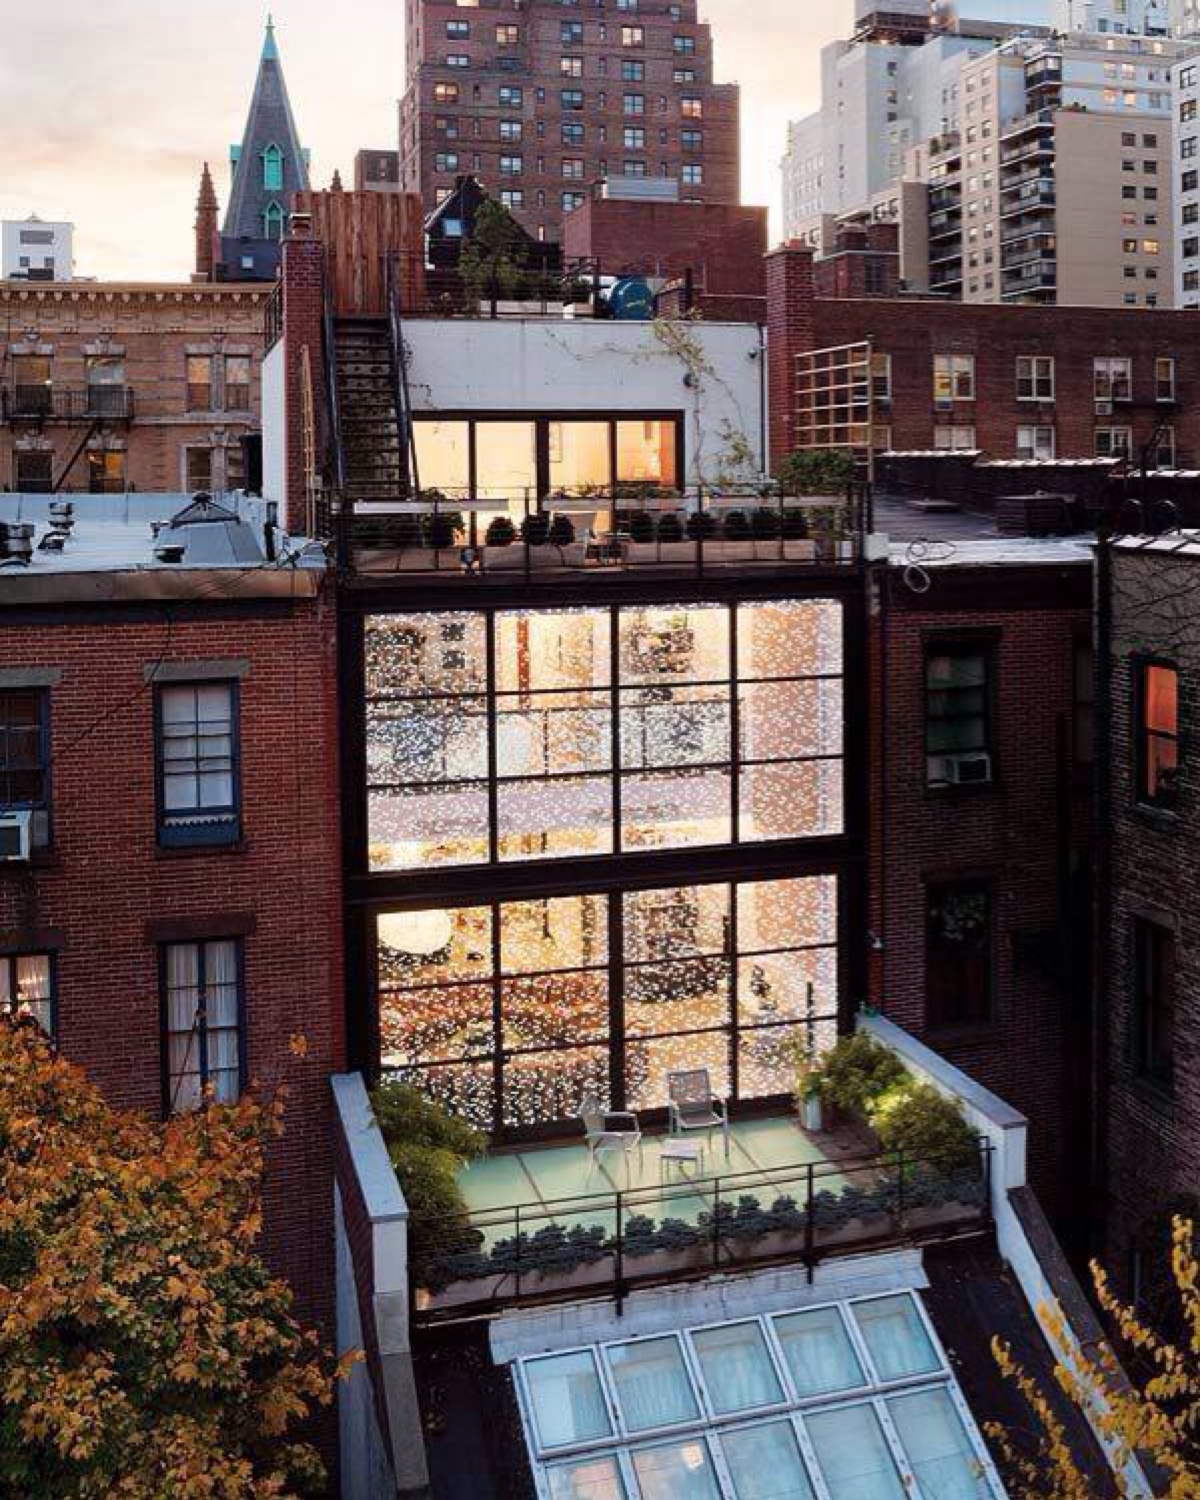 loft这个概念诞生自纽约soho区成为了"开放,自由,透明,艺术"的代名词